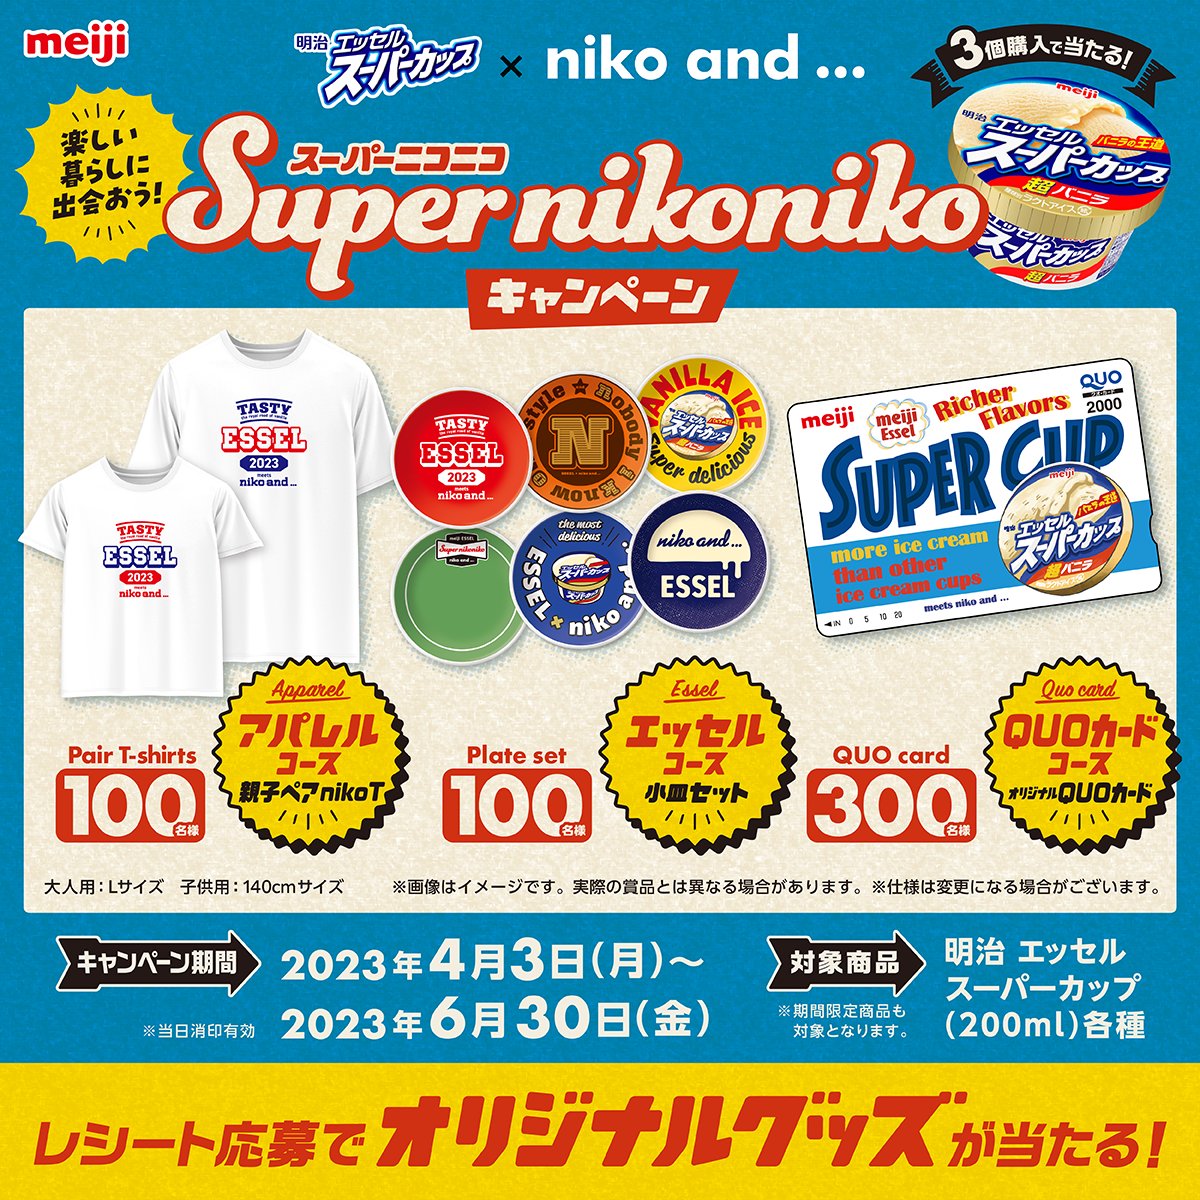 Super nikonikoキャンペーン_明治